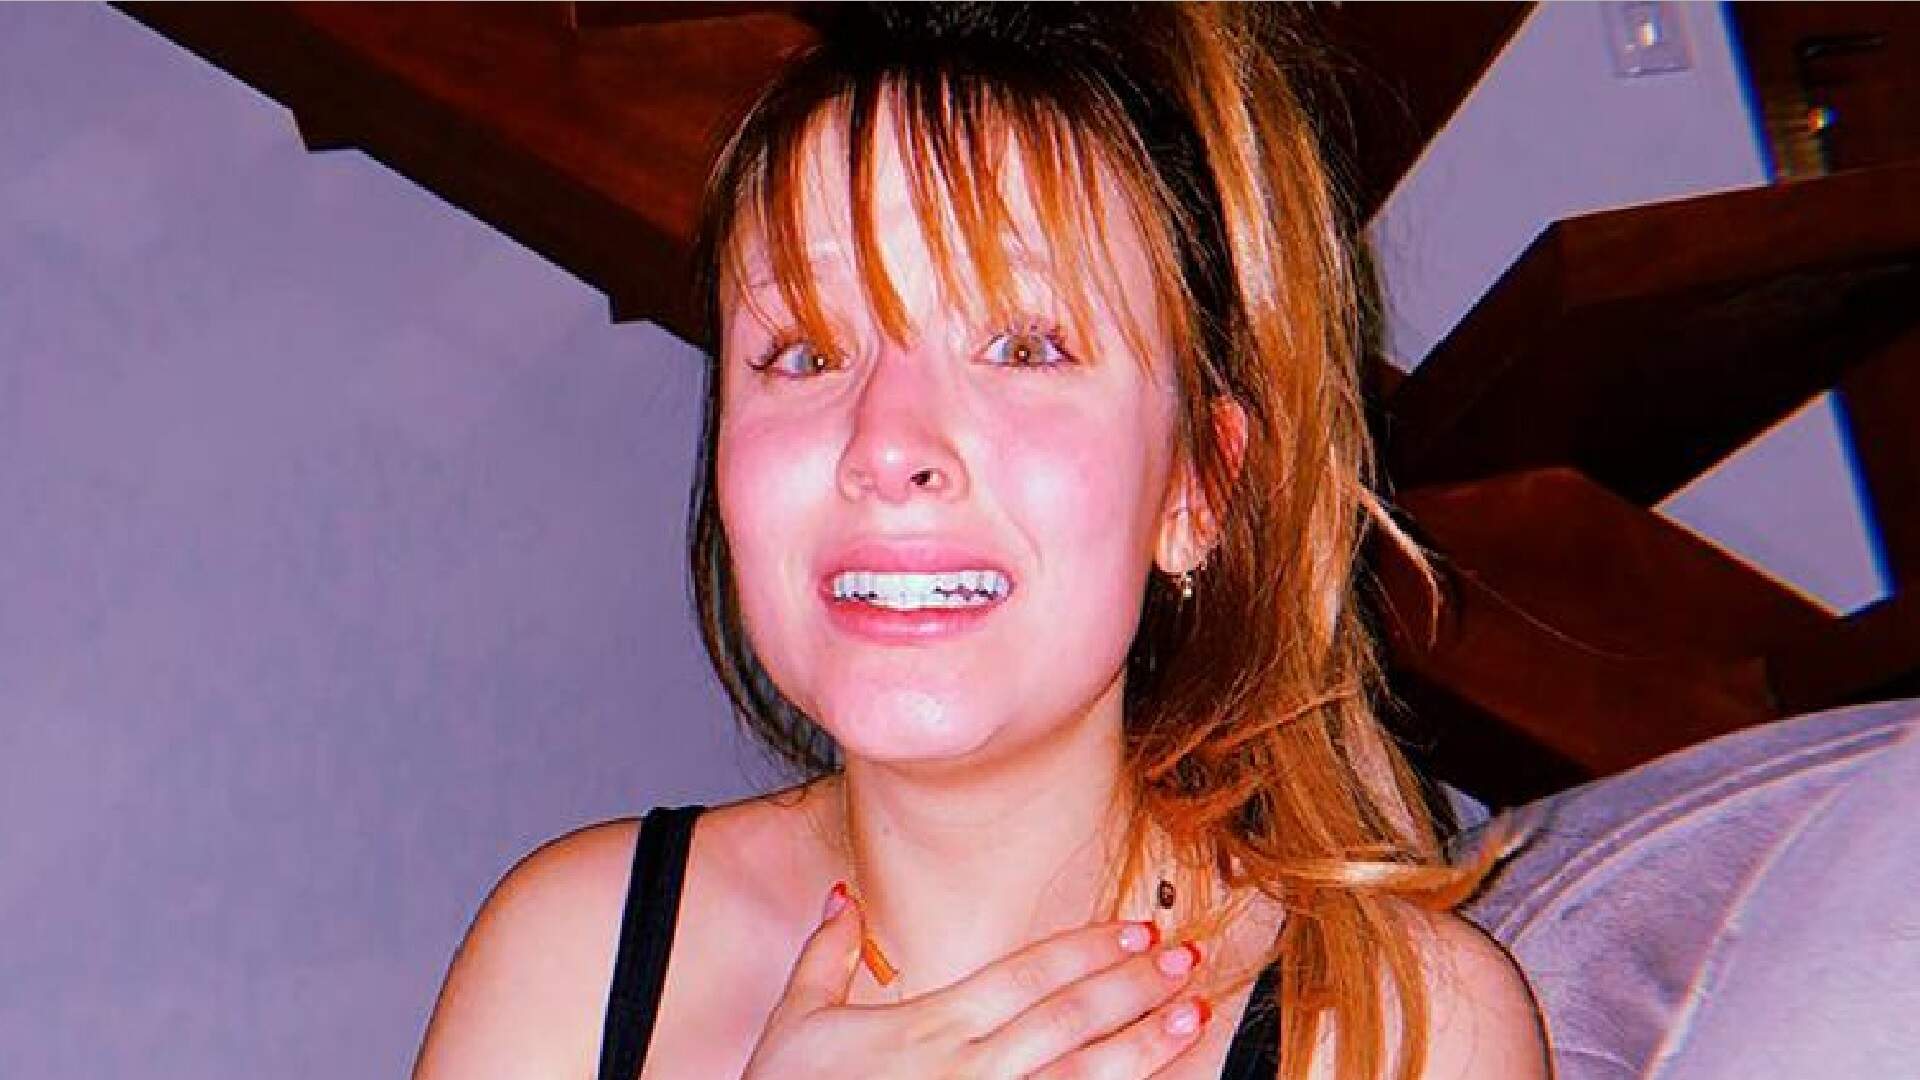 Chorando, Larissa Manoela deixa recado nas redes sociais e preocupa fãs: “A gente perde o controle” - Metropolitana FM